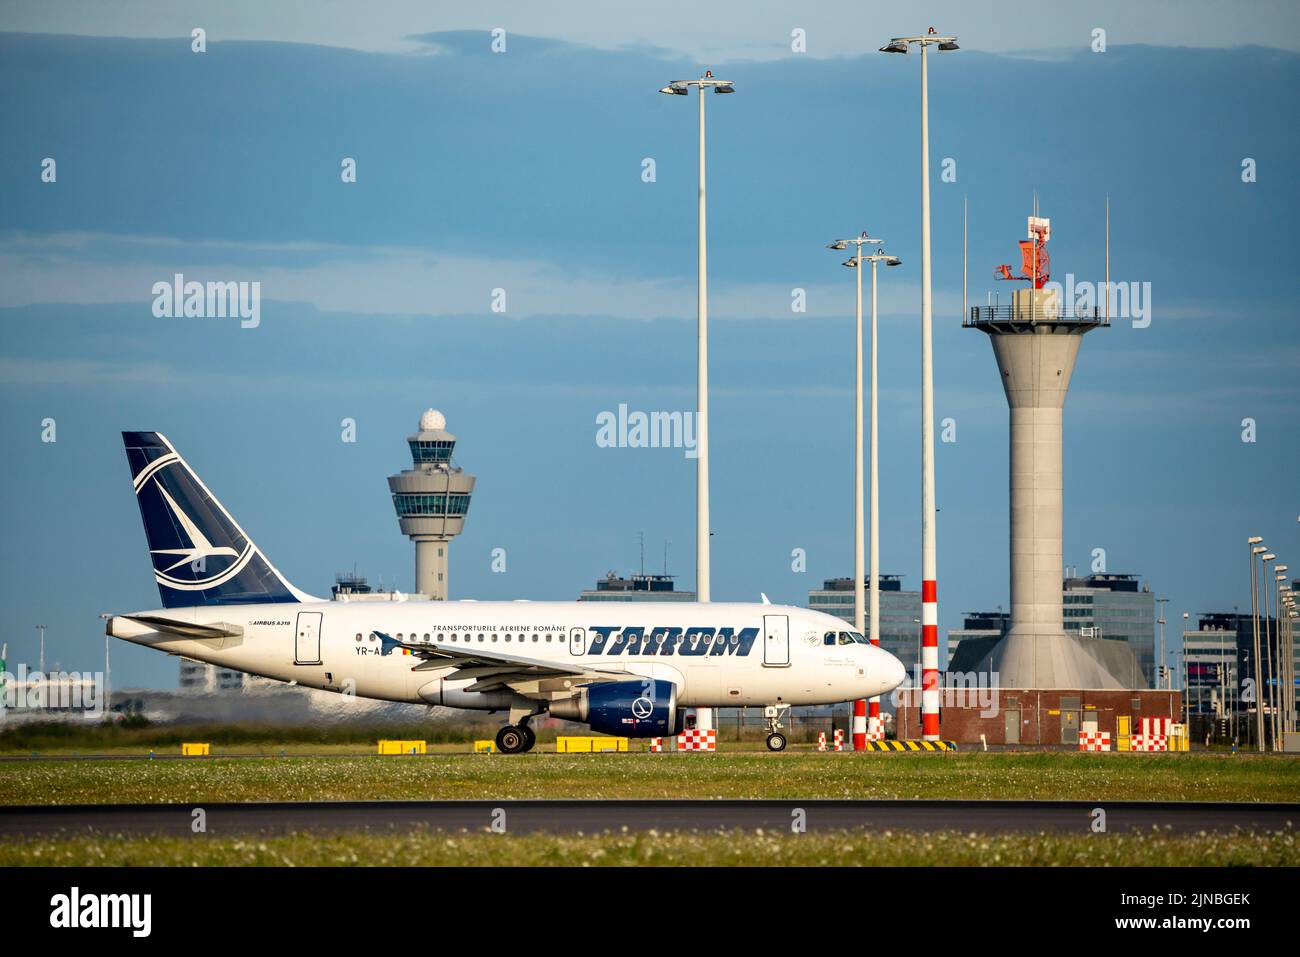 Amsterdam Shiphol Airport, Polderbaan, eine von 6 Start- und Landebahnen, Flugsicherungsturm, auf dem Rollweg zum Start, YR-ASB, TAROM Airbus A318-100. Stockfoto